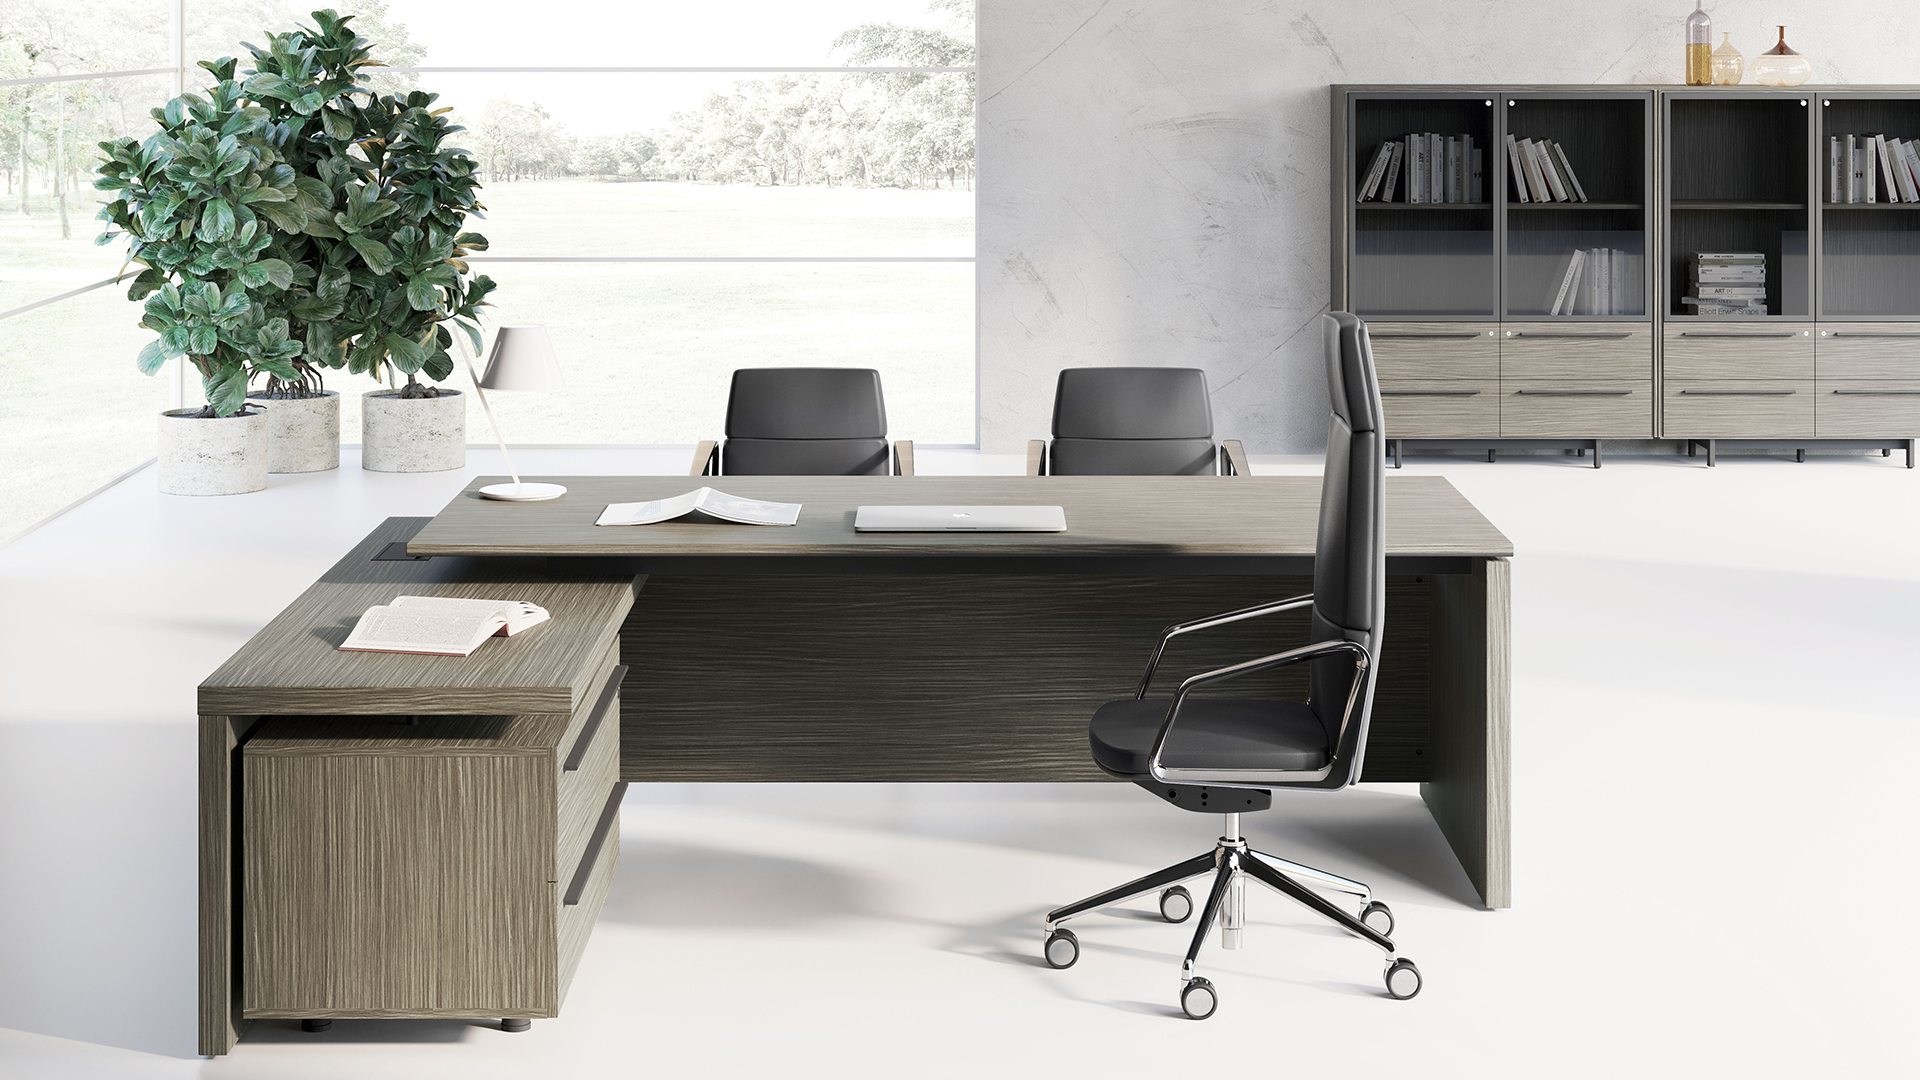 Для организации рабочего места руководителя стол с приставной столешницей — идеальное решение